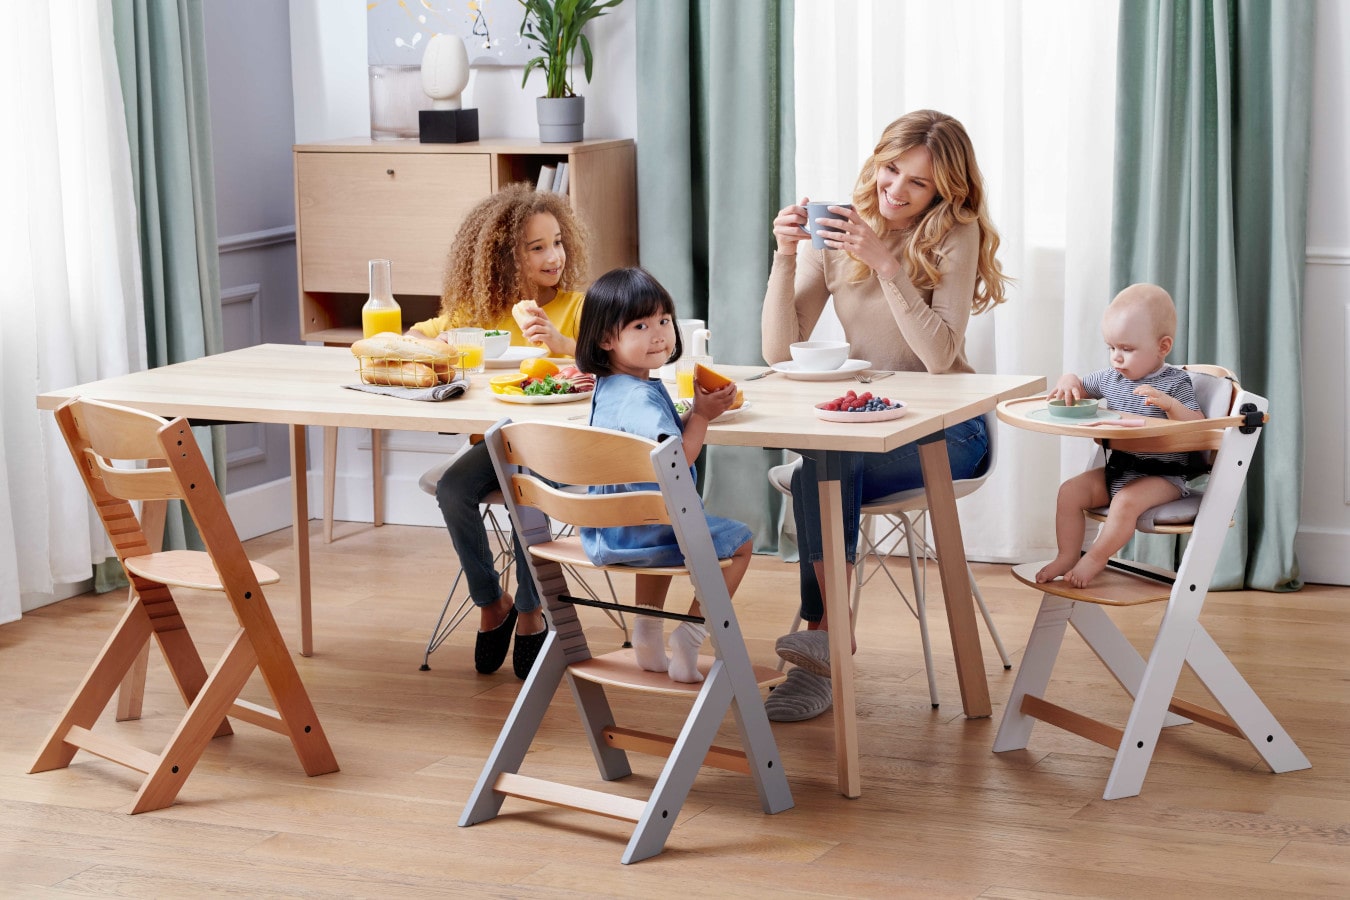 Mama i trójka dzieci siedzą przy jednym stole, mama pije kawę, dzieci są szczęśliwe. Krzesełko ENOCK jest w 3 konfiguracjach - od krzesła do karmienia po krzesło dla starszego dziecka.